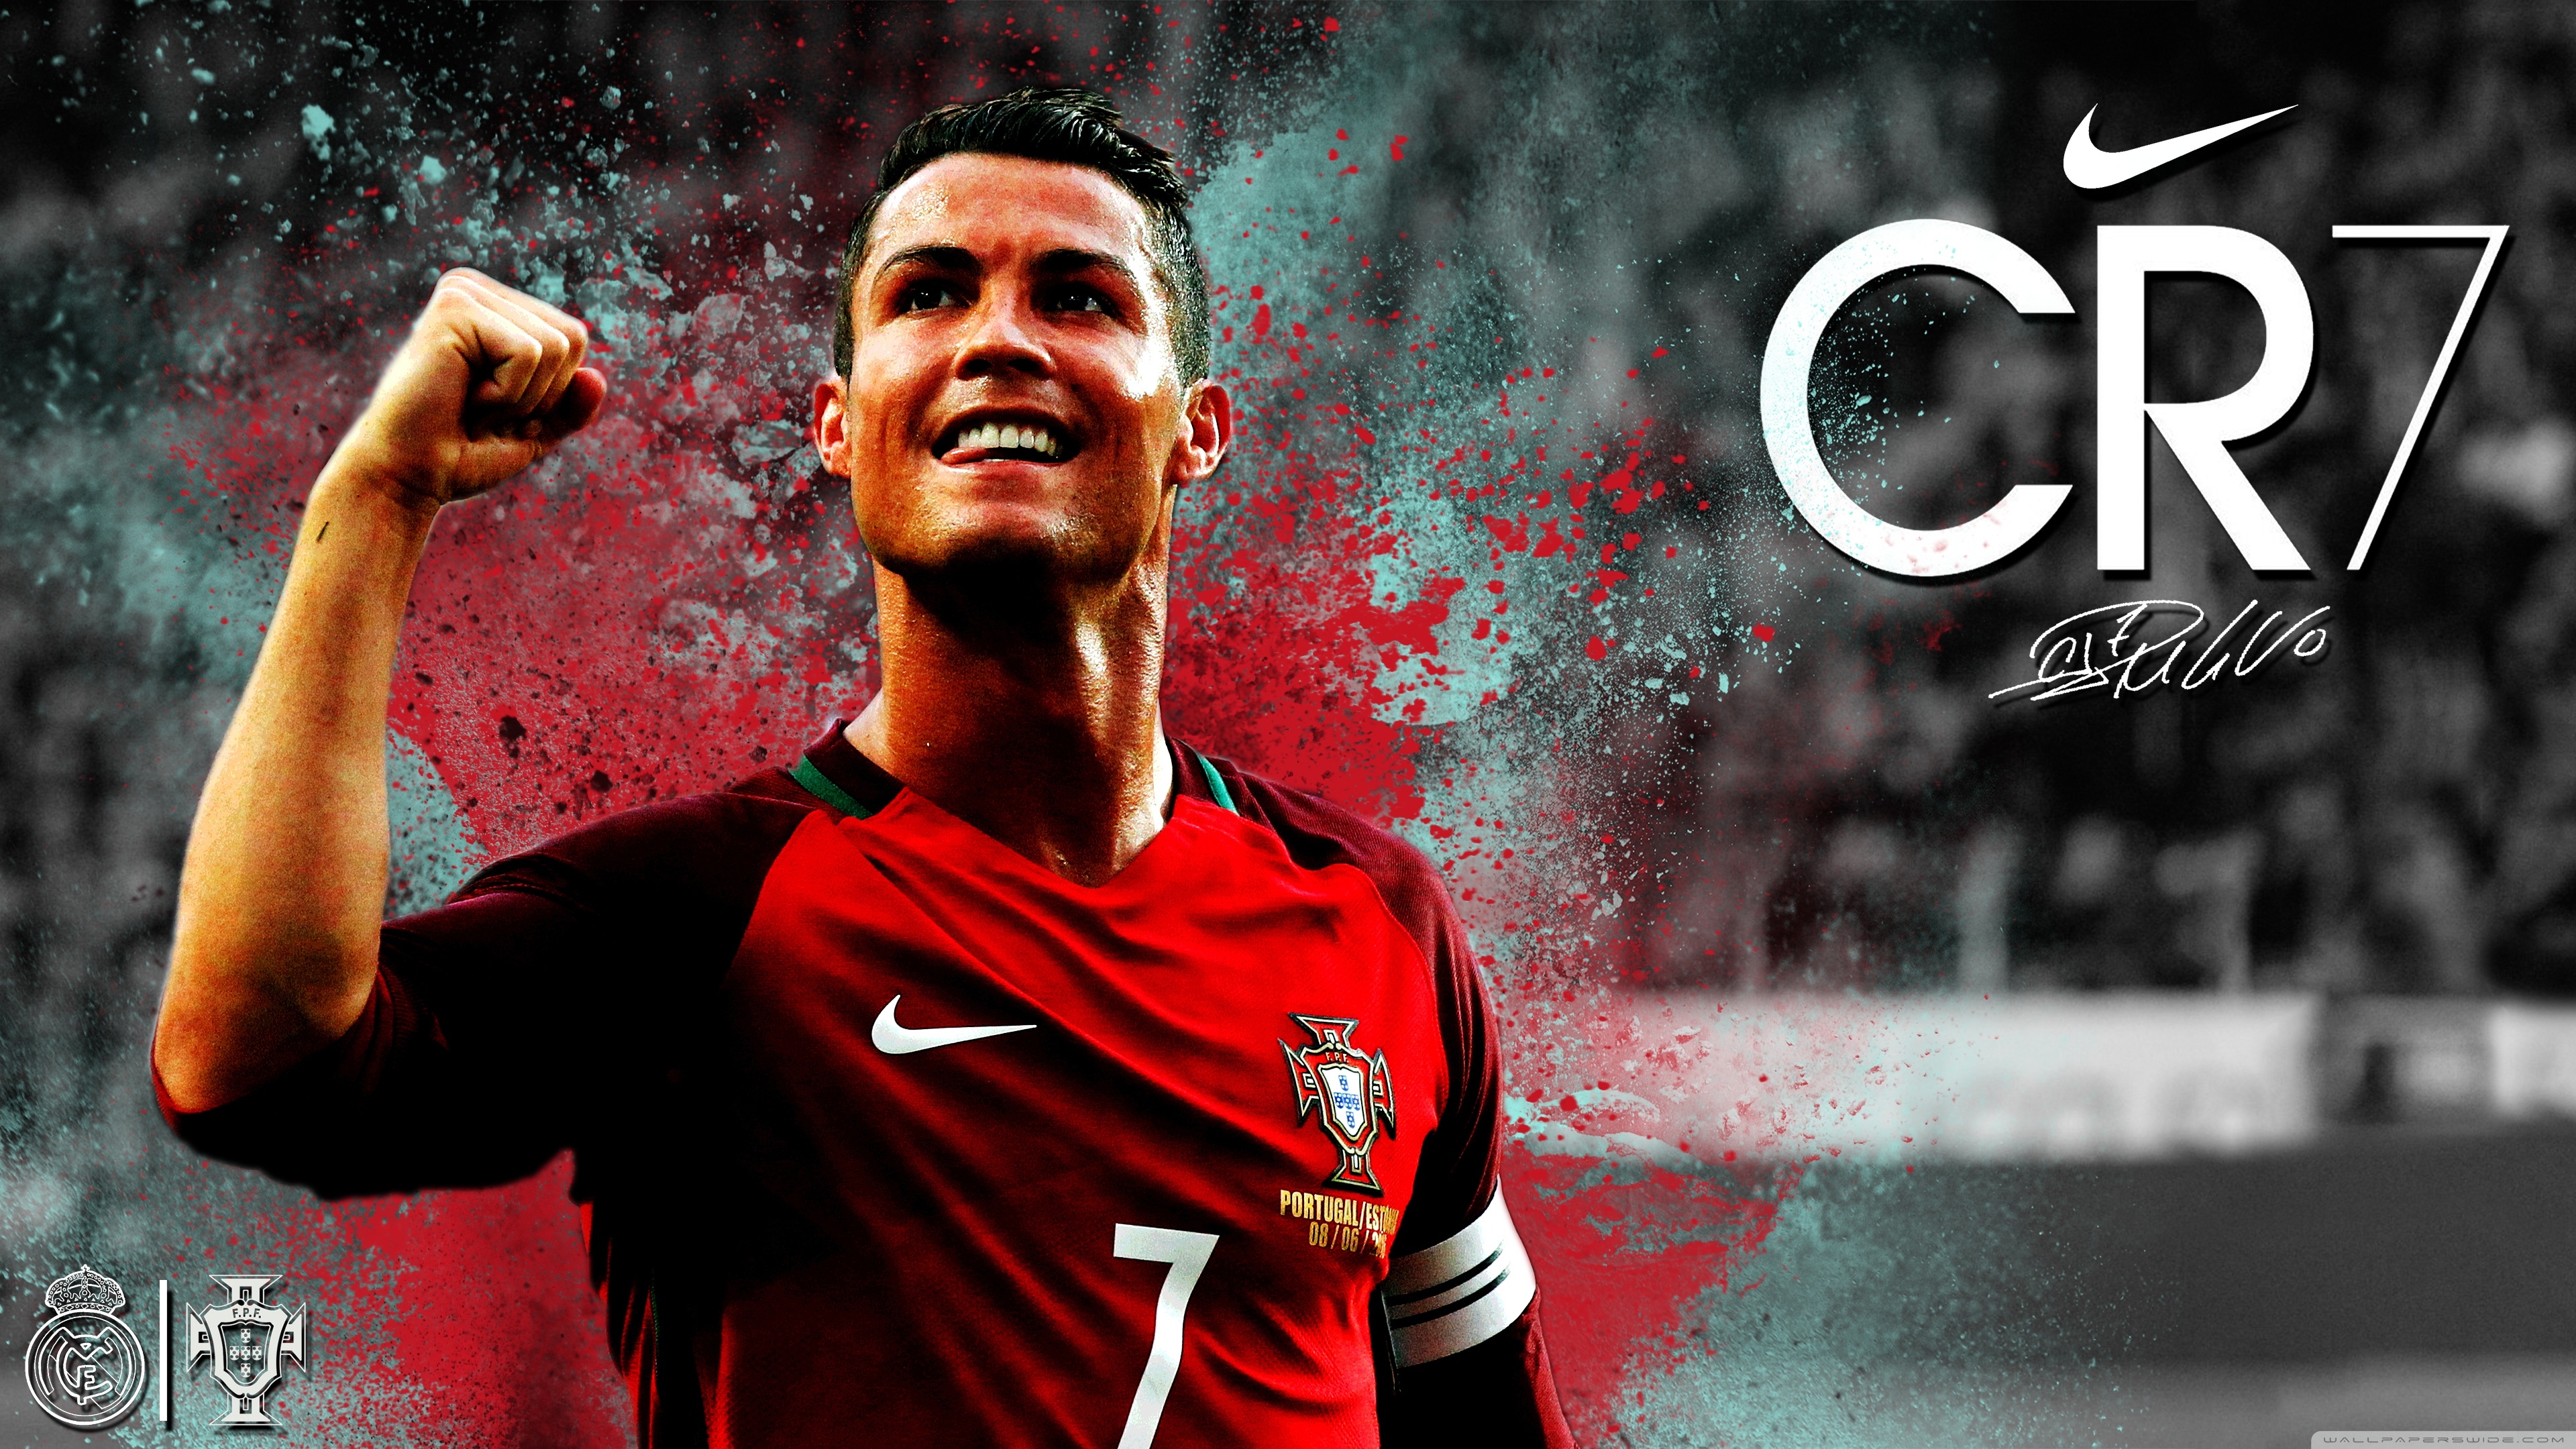 Cristiano Ronaldo Wallpaper 4k Full HD Cr7 Portugal